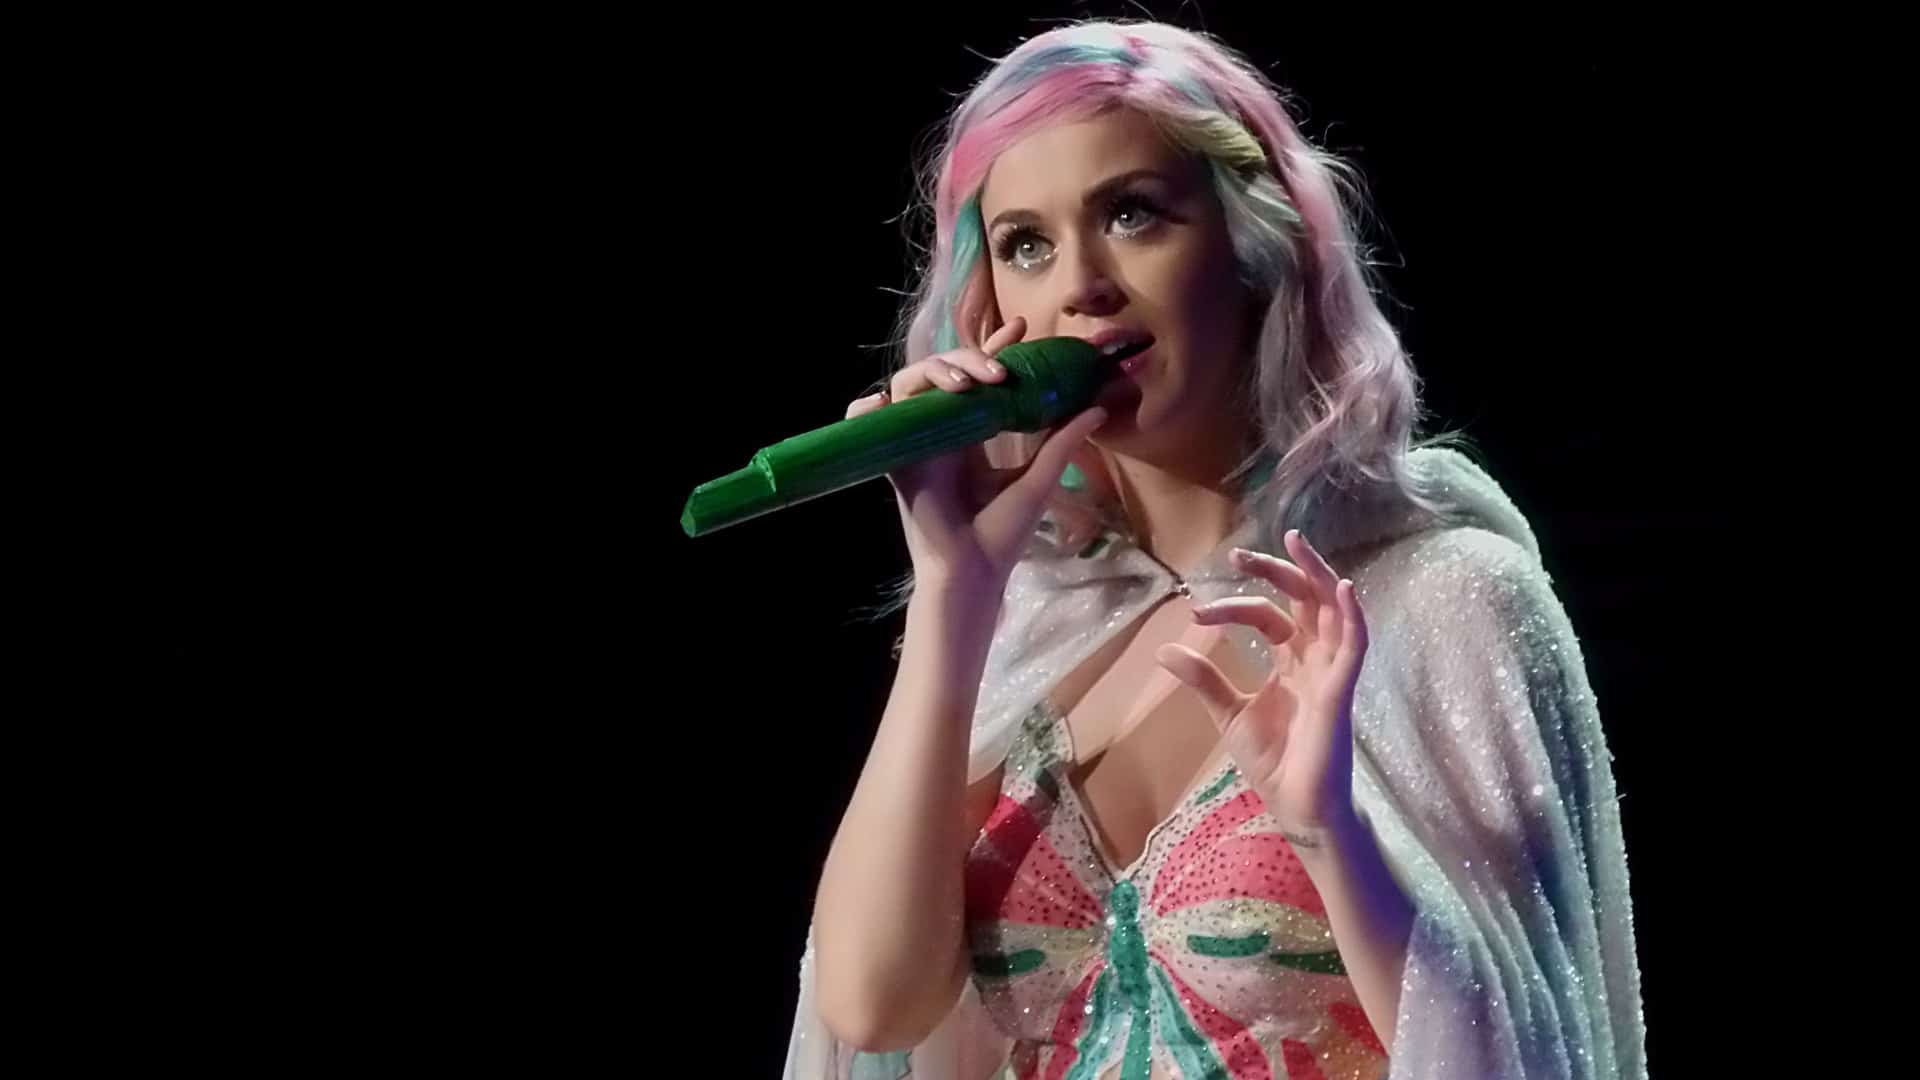 Sängerin Katy Perry stammt aus einem streng religiösen Elternhaus (Archivbild)